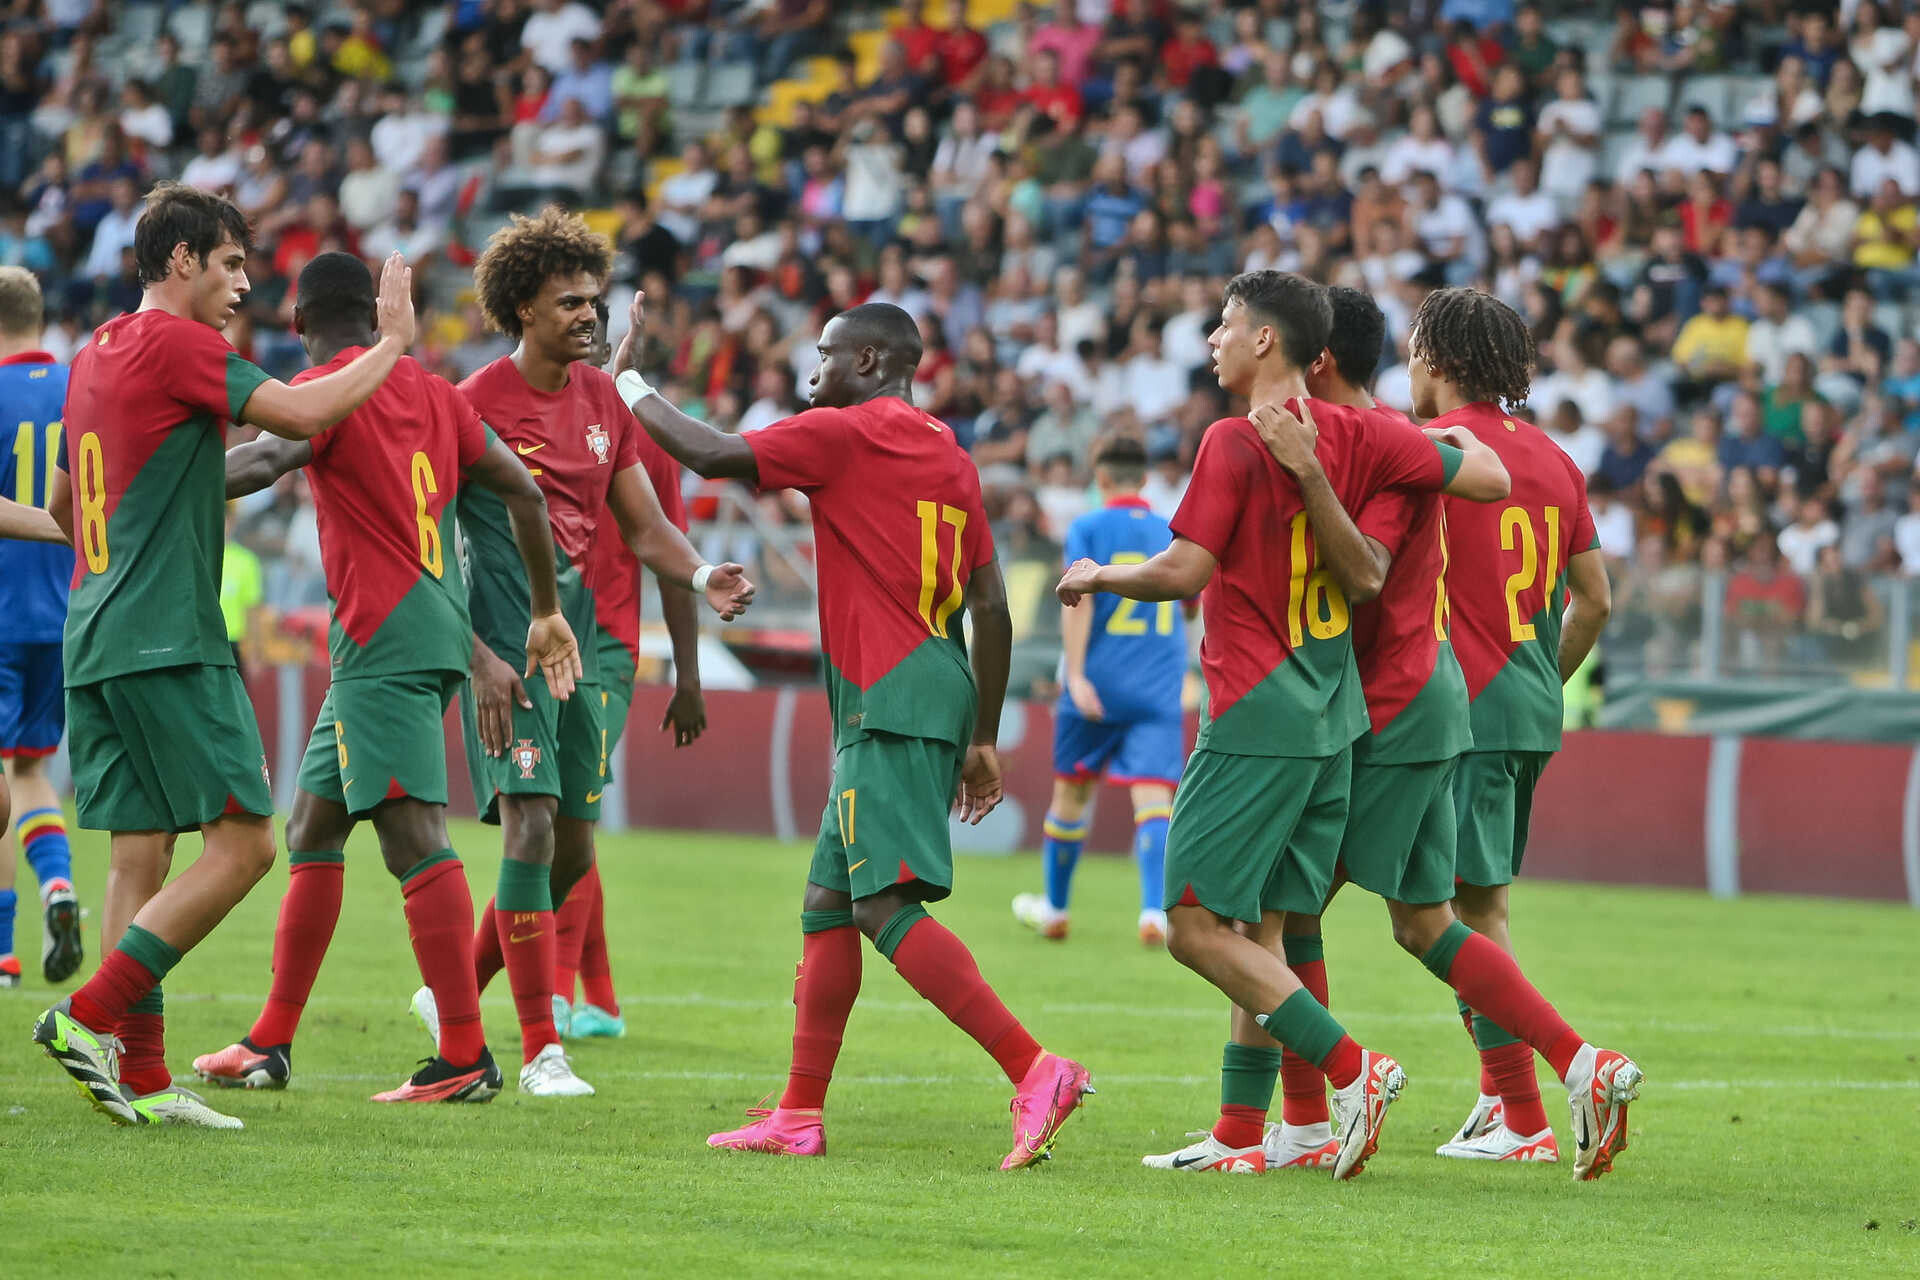 Portugal goleia Bielorrússia e lidera qualificação para o Euro sub-21